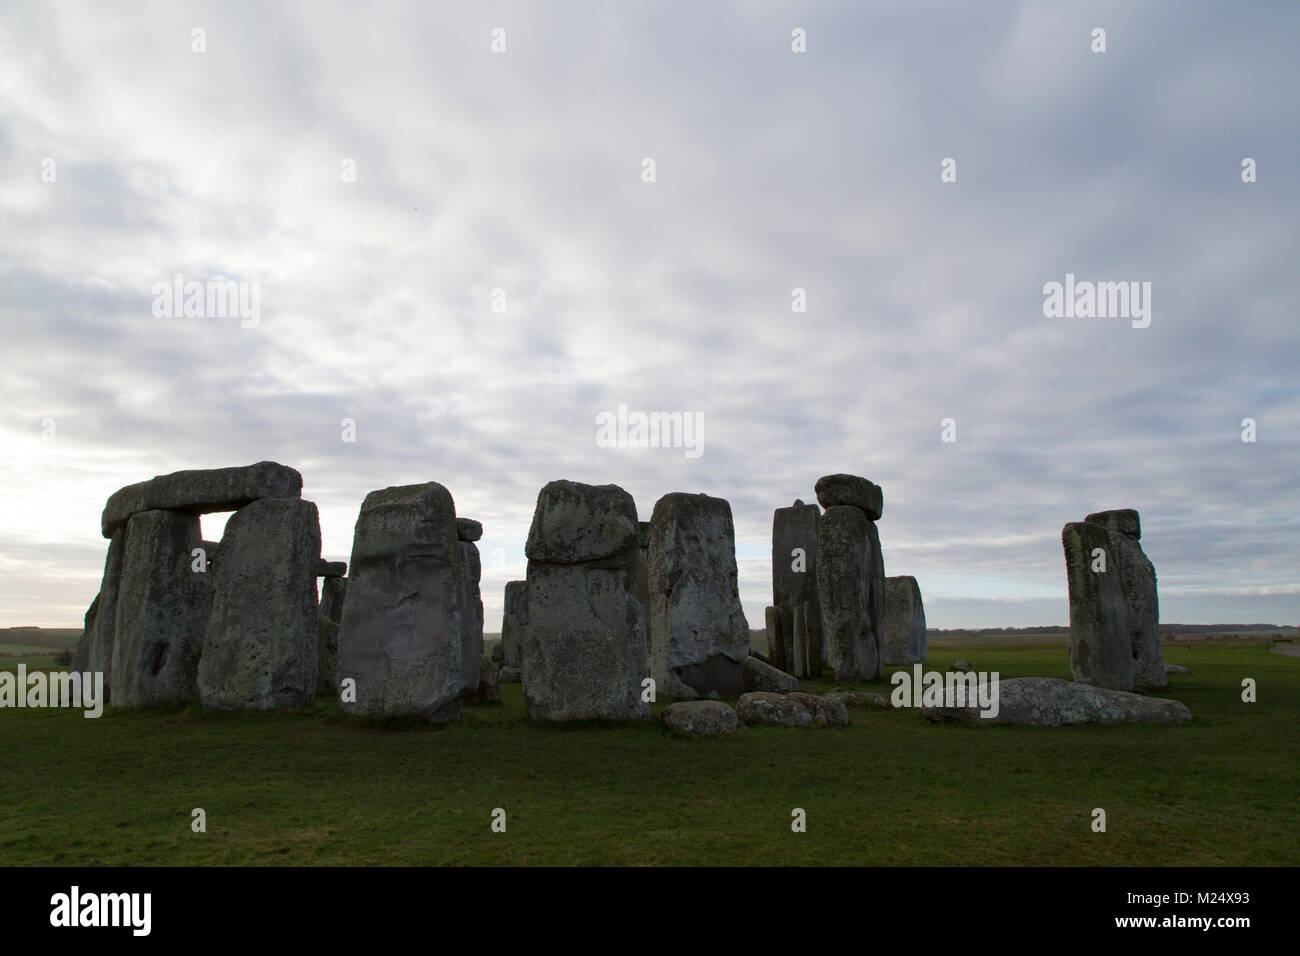 El círculo de piedra de Stonehenge en Wiltshire, Inglaterra. El antiguo monumento data del Neolítico, hace unos 5.000 años. Foto de stock